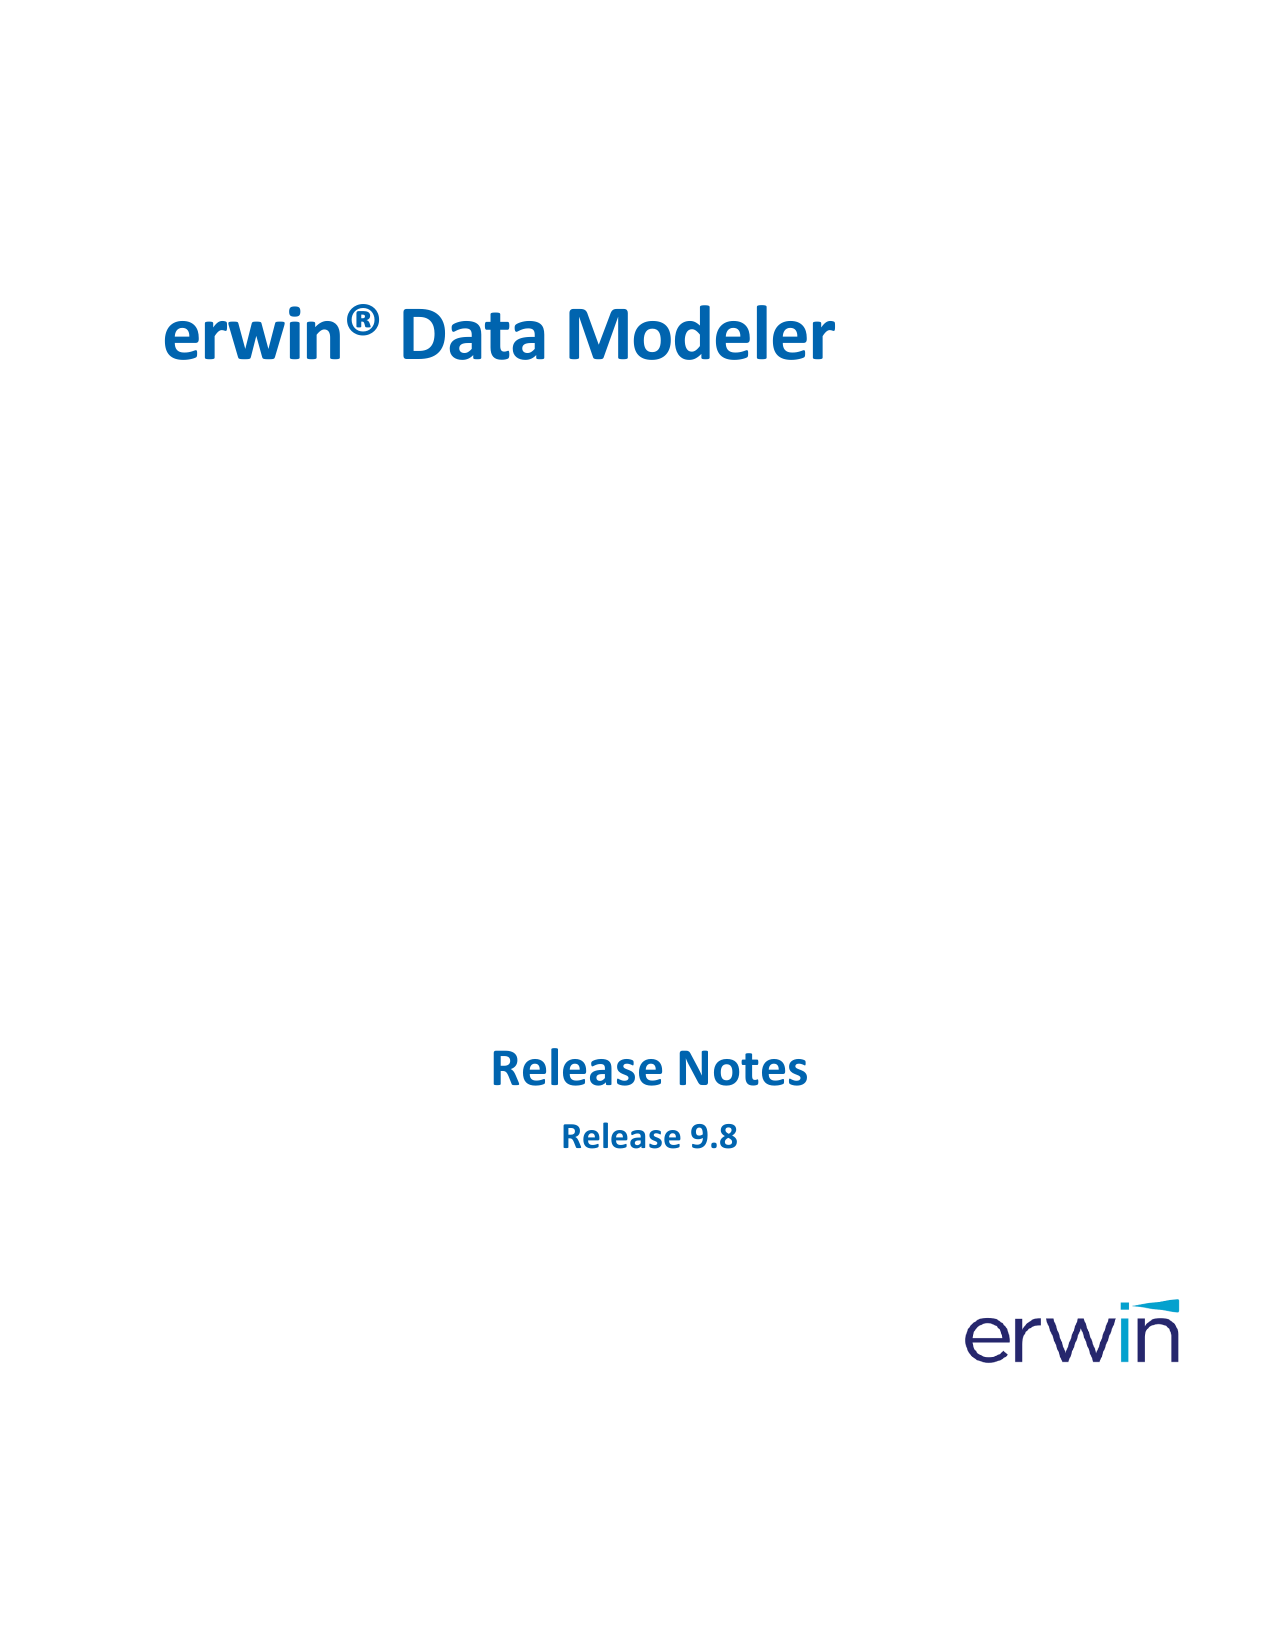 erwin data modeler 7.3 full